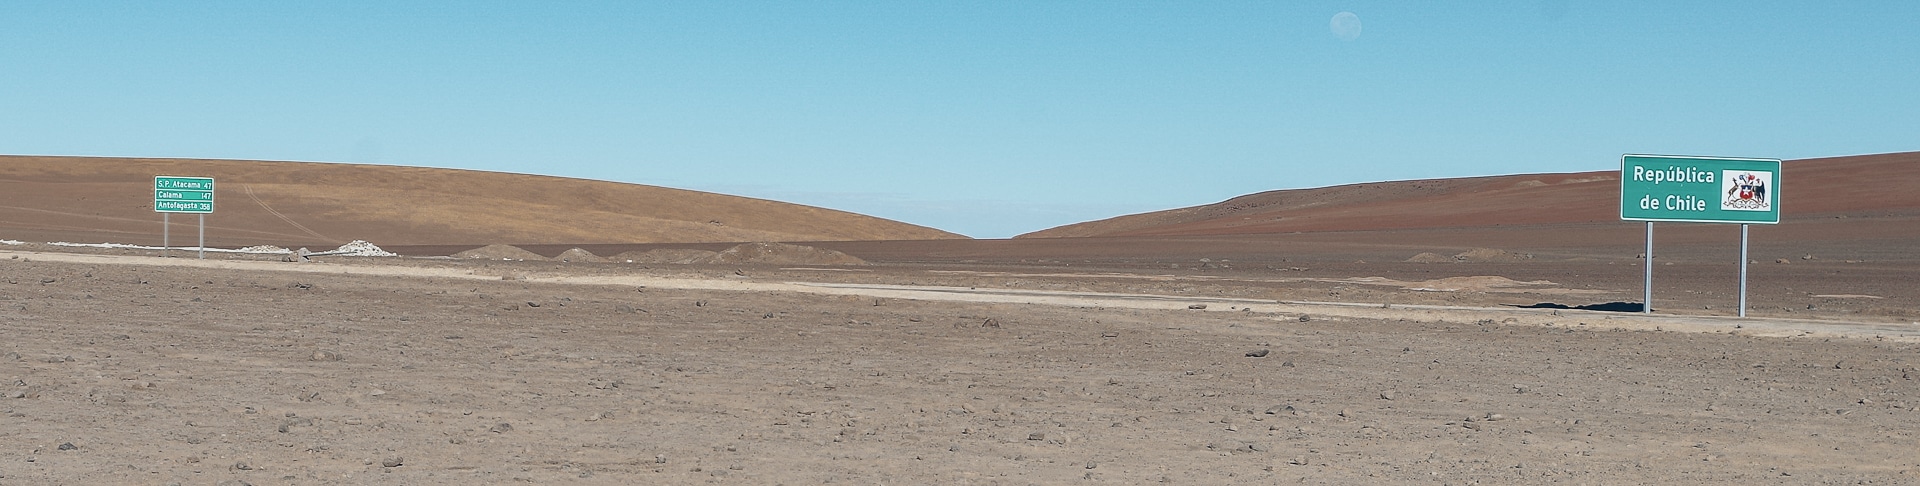 préparer voyage Chili passage frontière Bolivie Chili au milieu du désert d'Atacama 